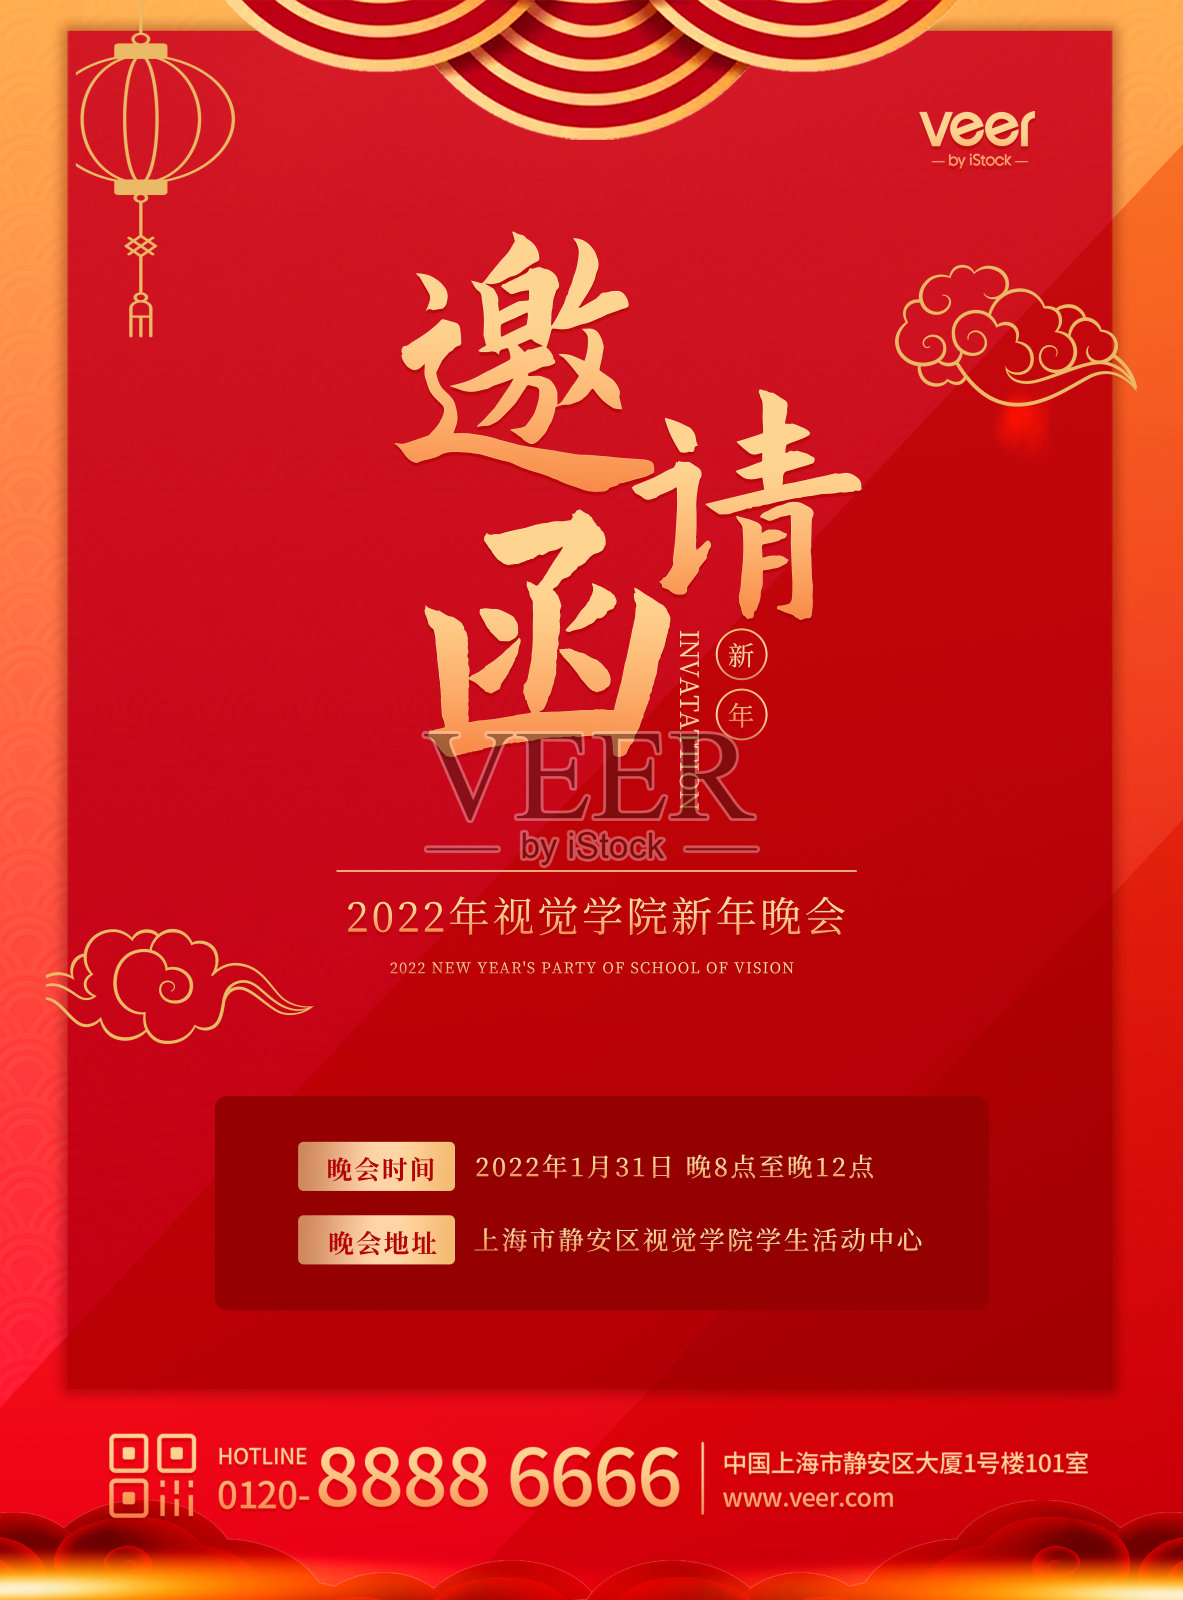 红色喜庆扁平新年晚会邀请平面海报设计模板素材